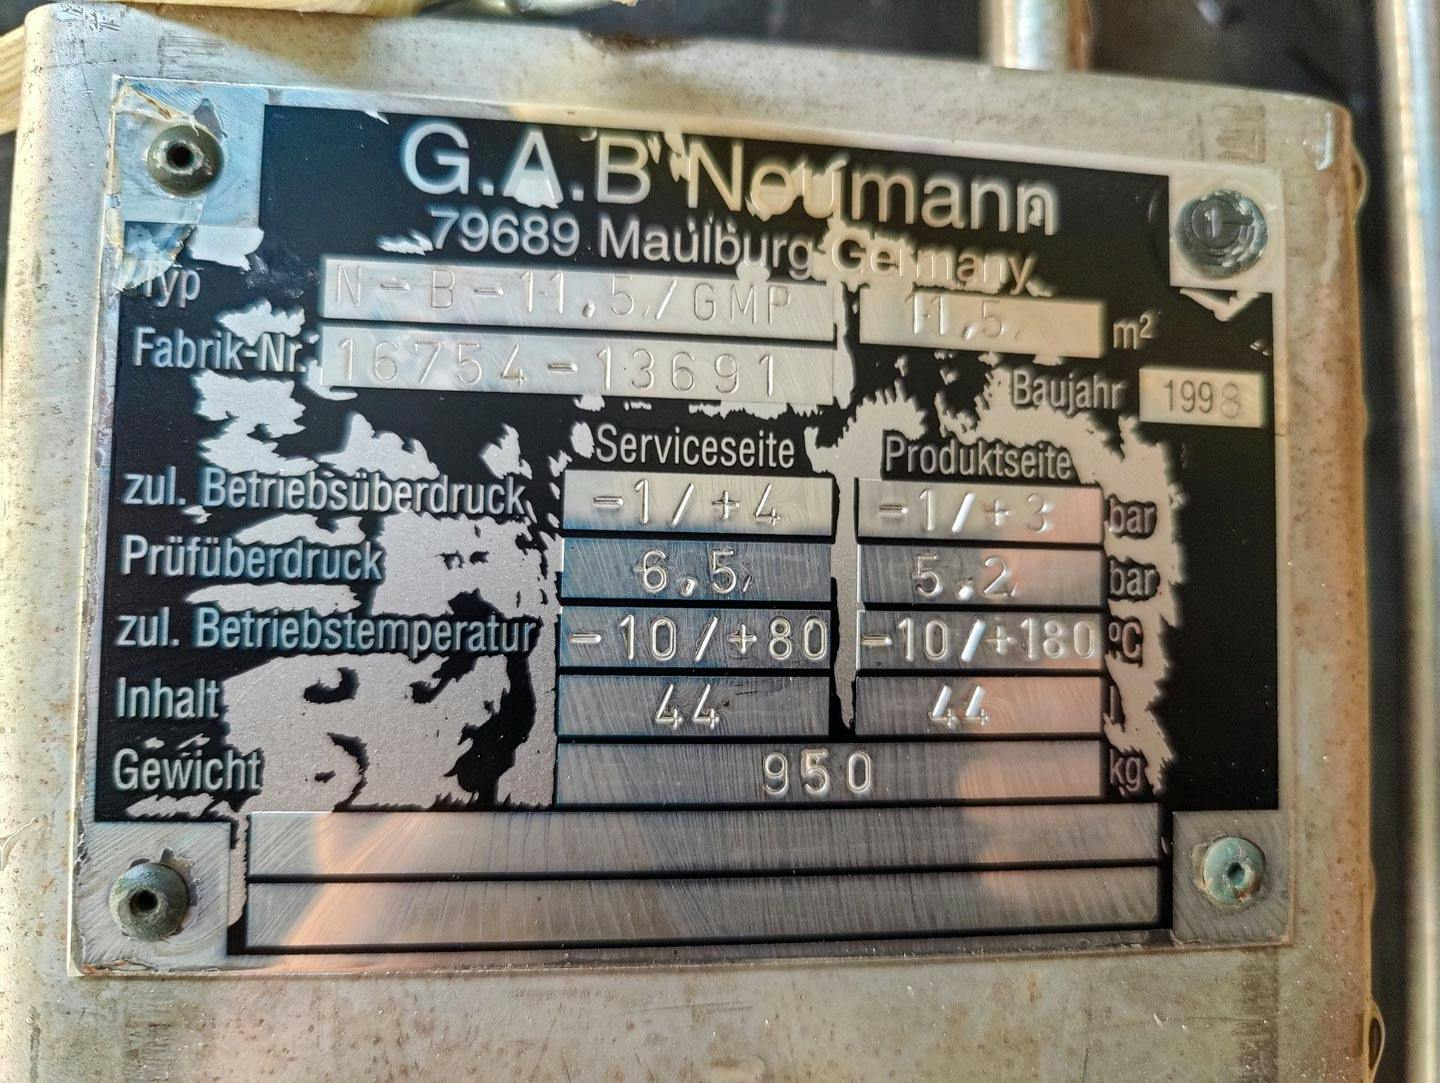 Gab Neumann N-B-11,5/GMP - Échangeur de température tubulaire - image 8